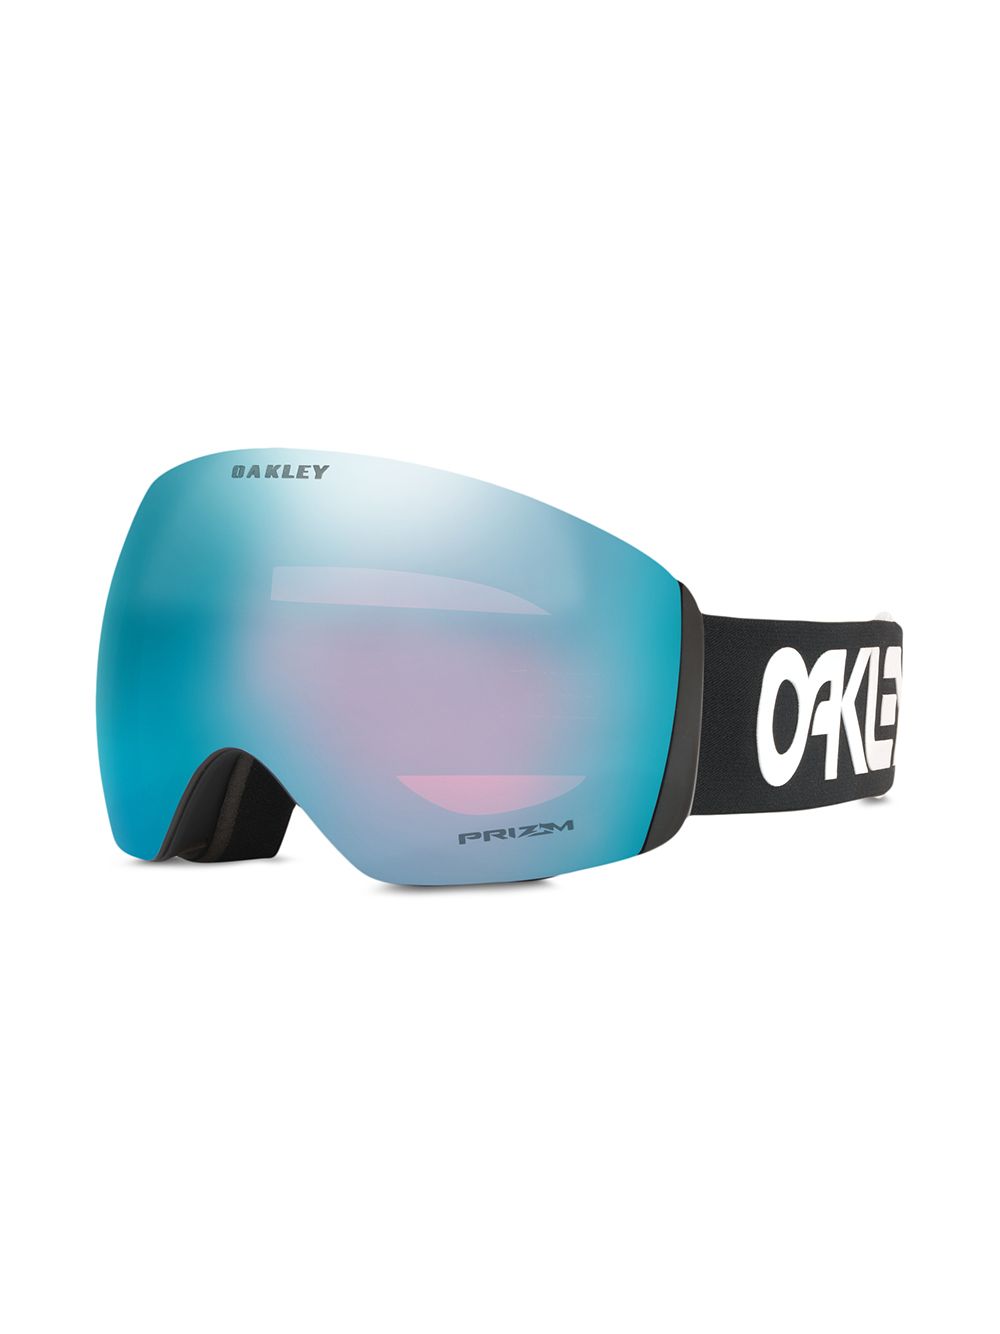 Oakley Flight Deck skibril - Blauw